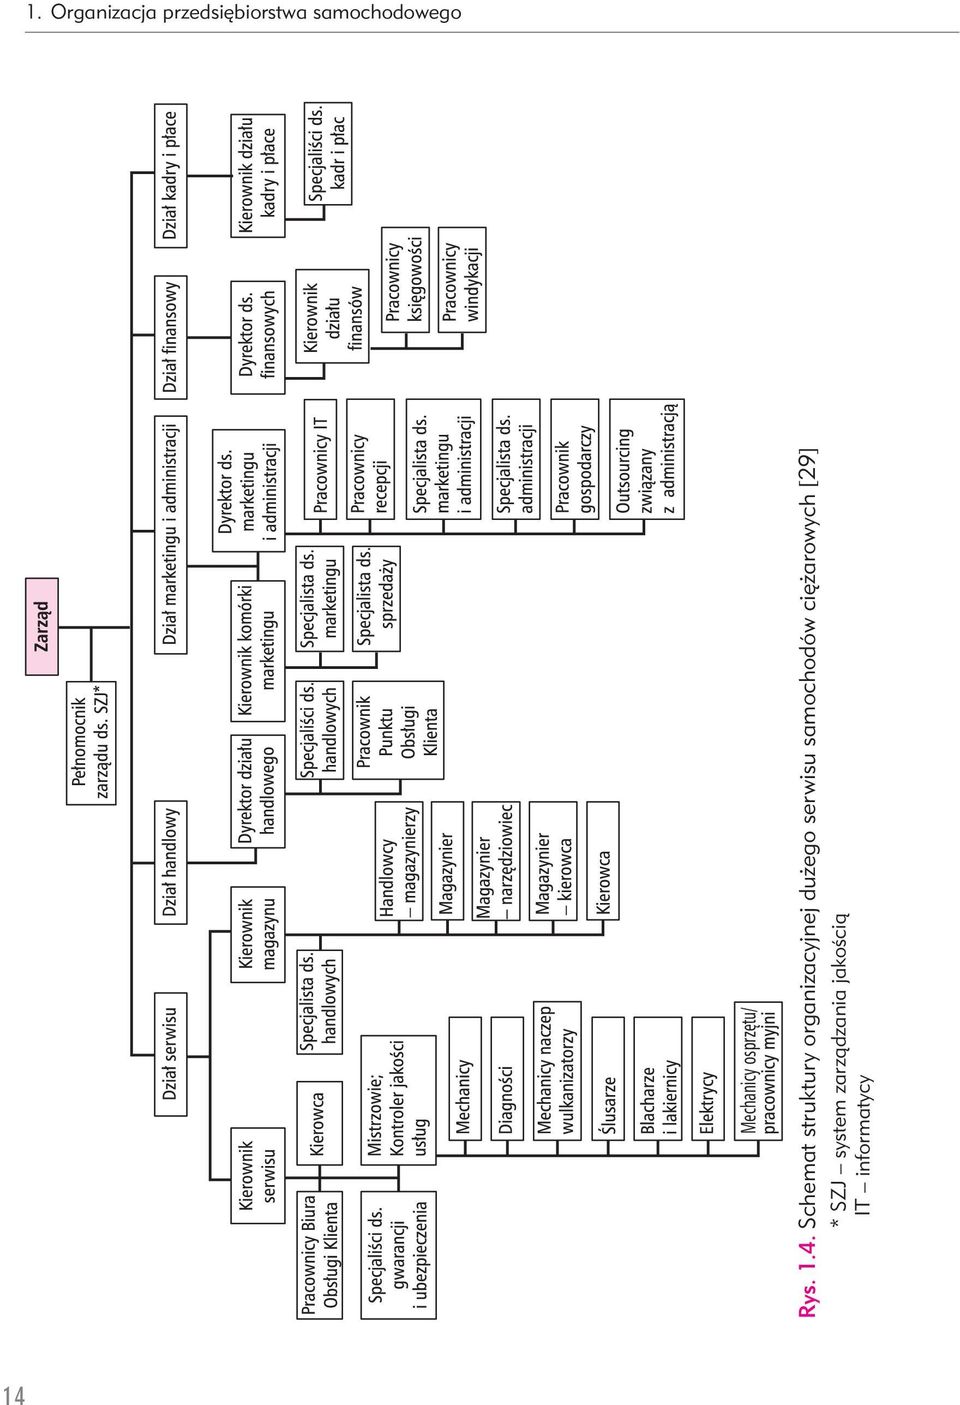 Schemat struktury organizacyjnej dużego serwisu